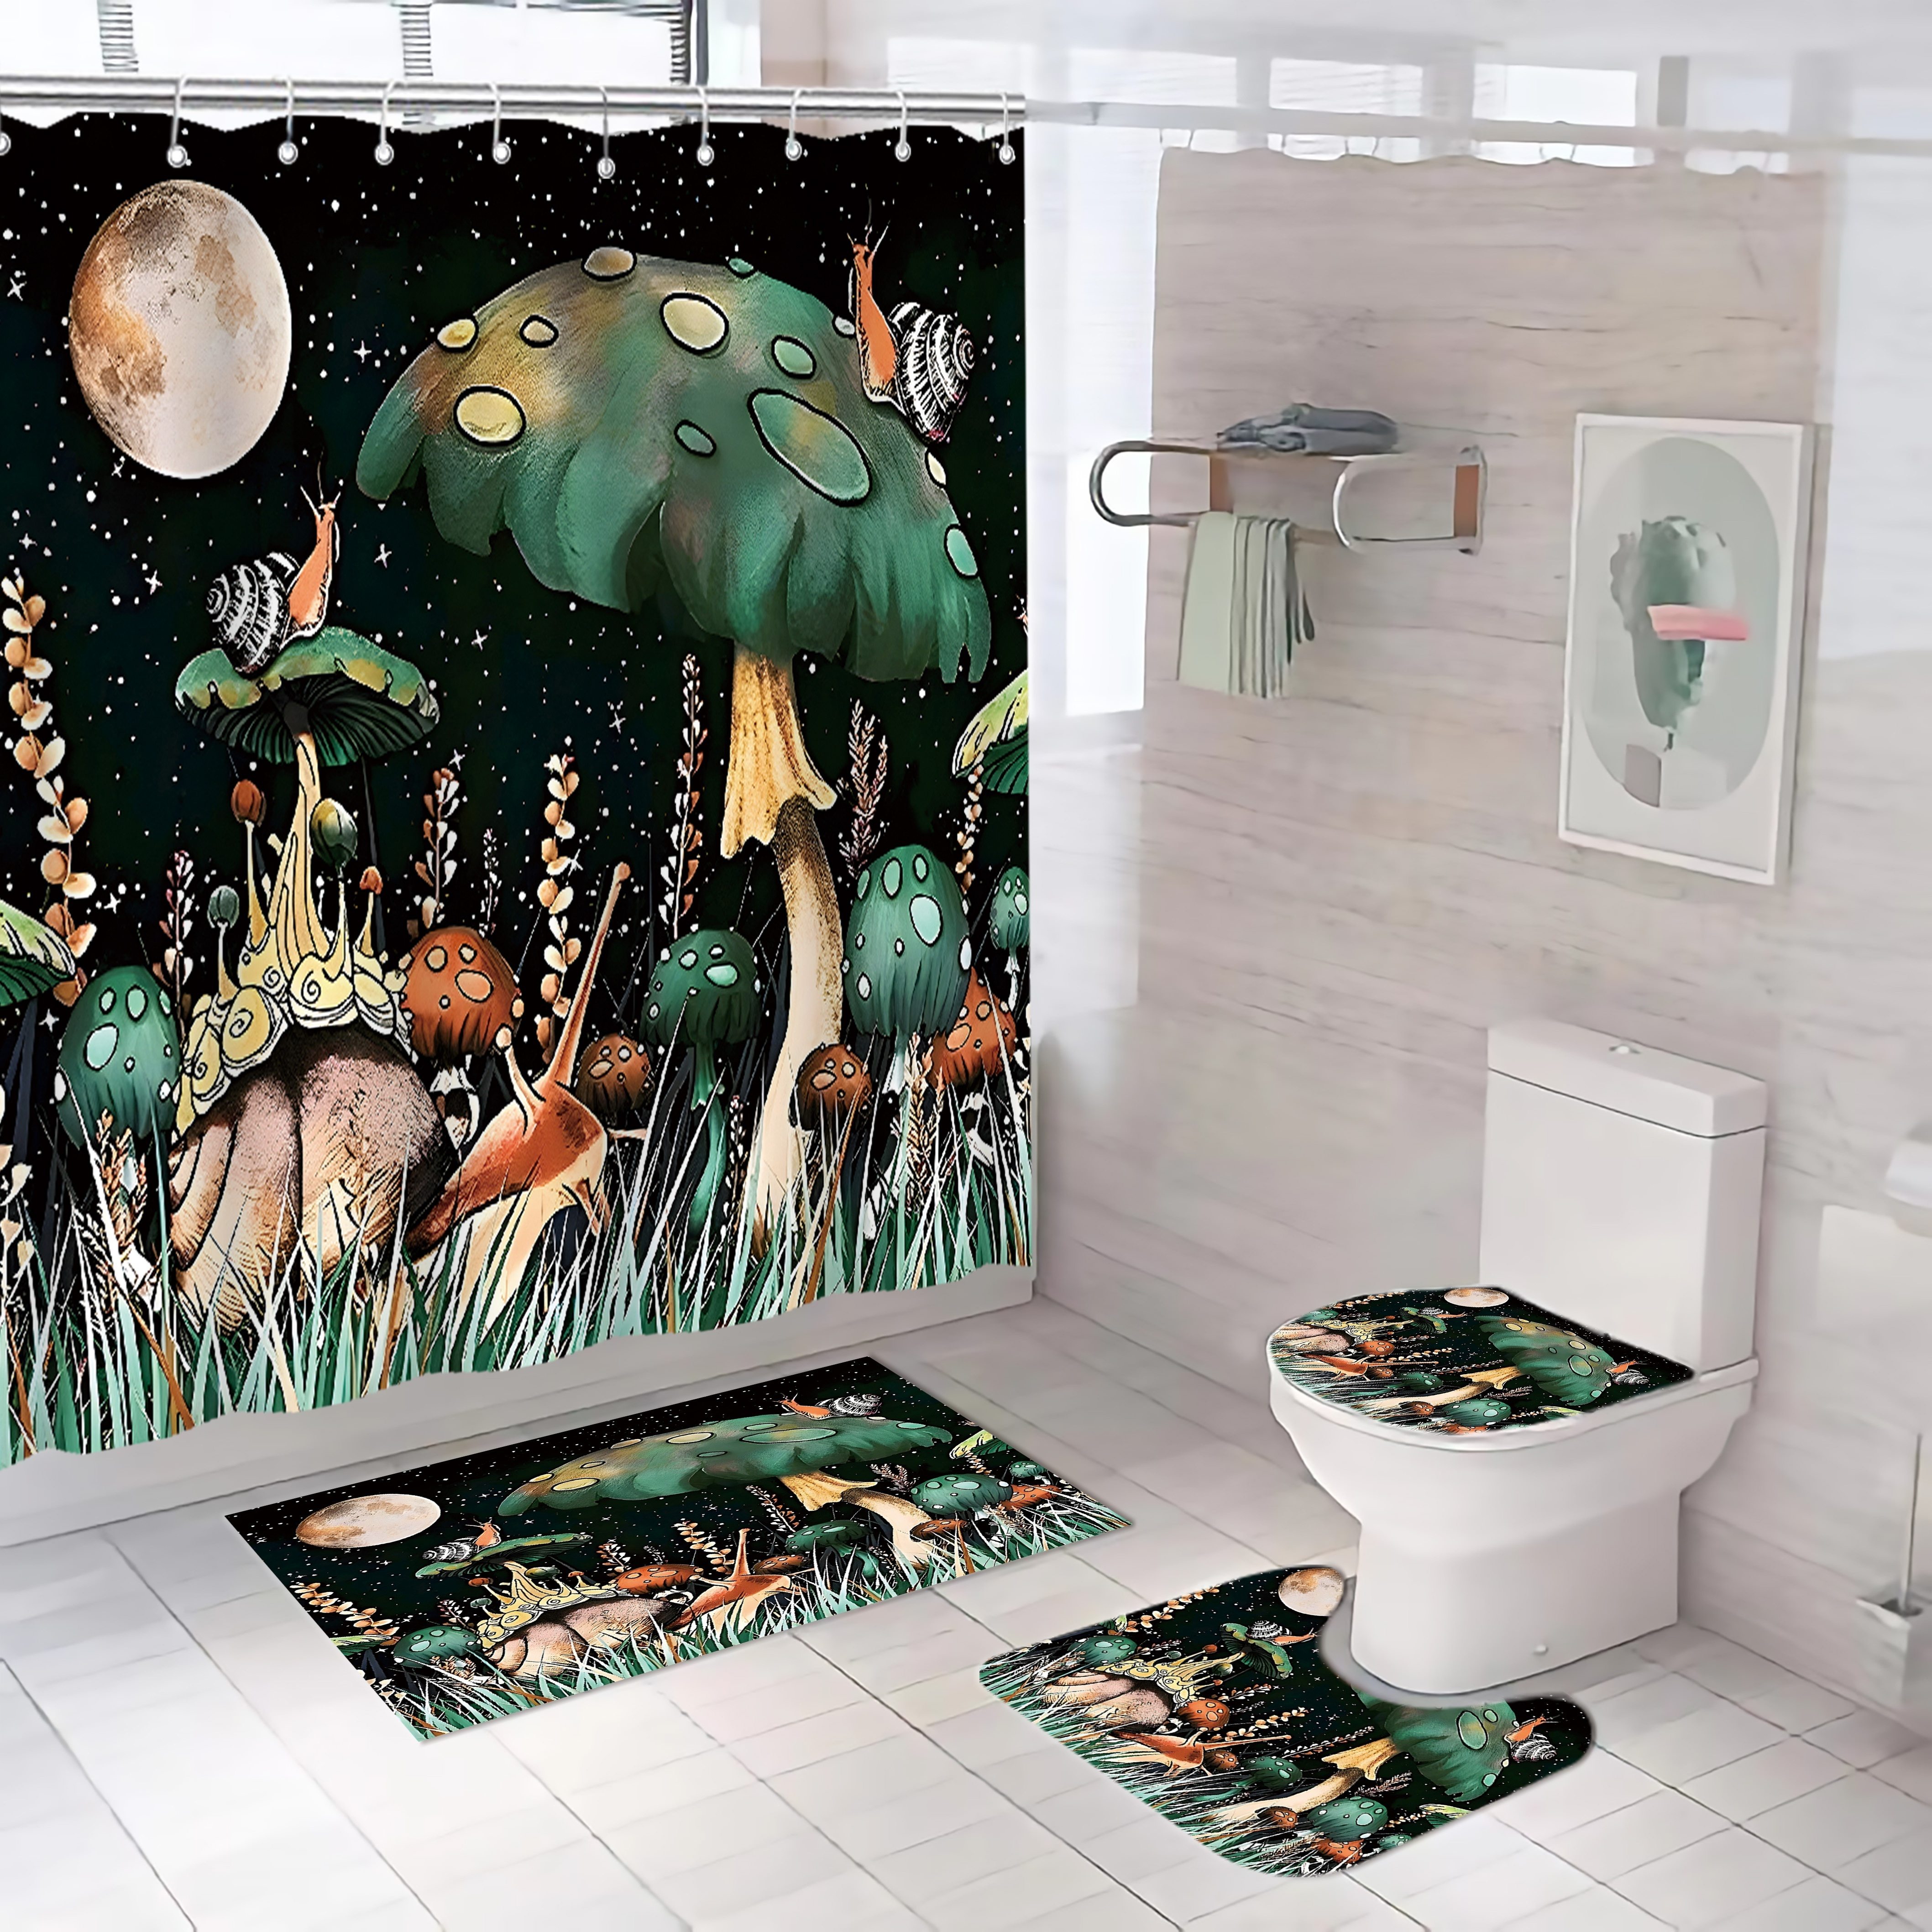 Mushroom Bathroom Decor - Temu